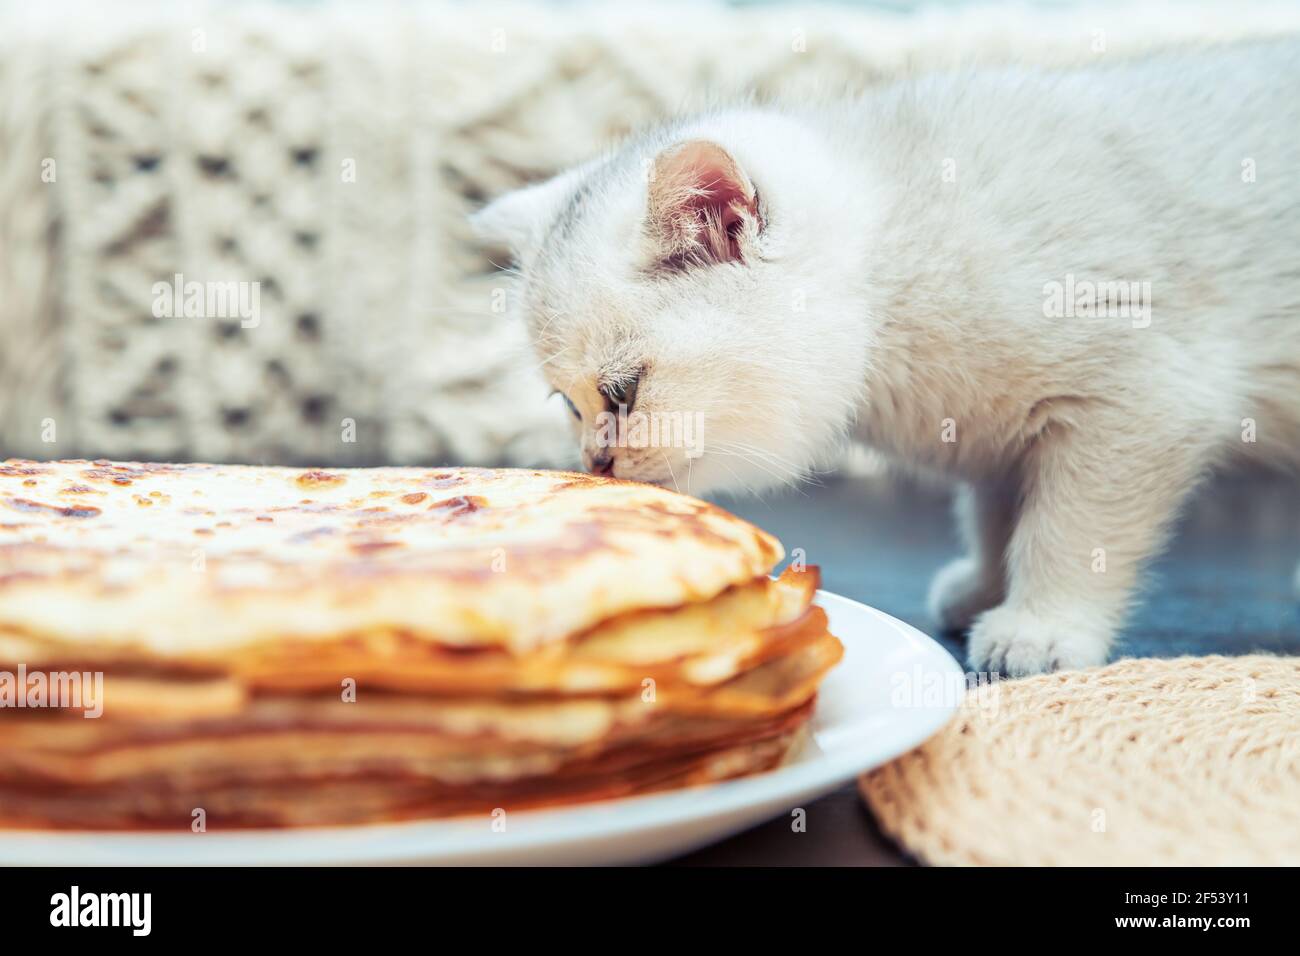 Das weiße britische Kätzchen schaut sich die Pfannkuchen an. Traditionelles Gericht für Fasching. Stockfoto